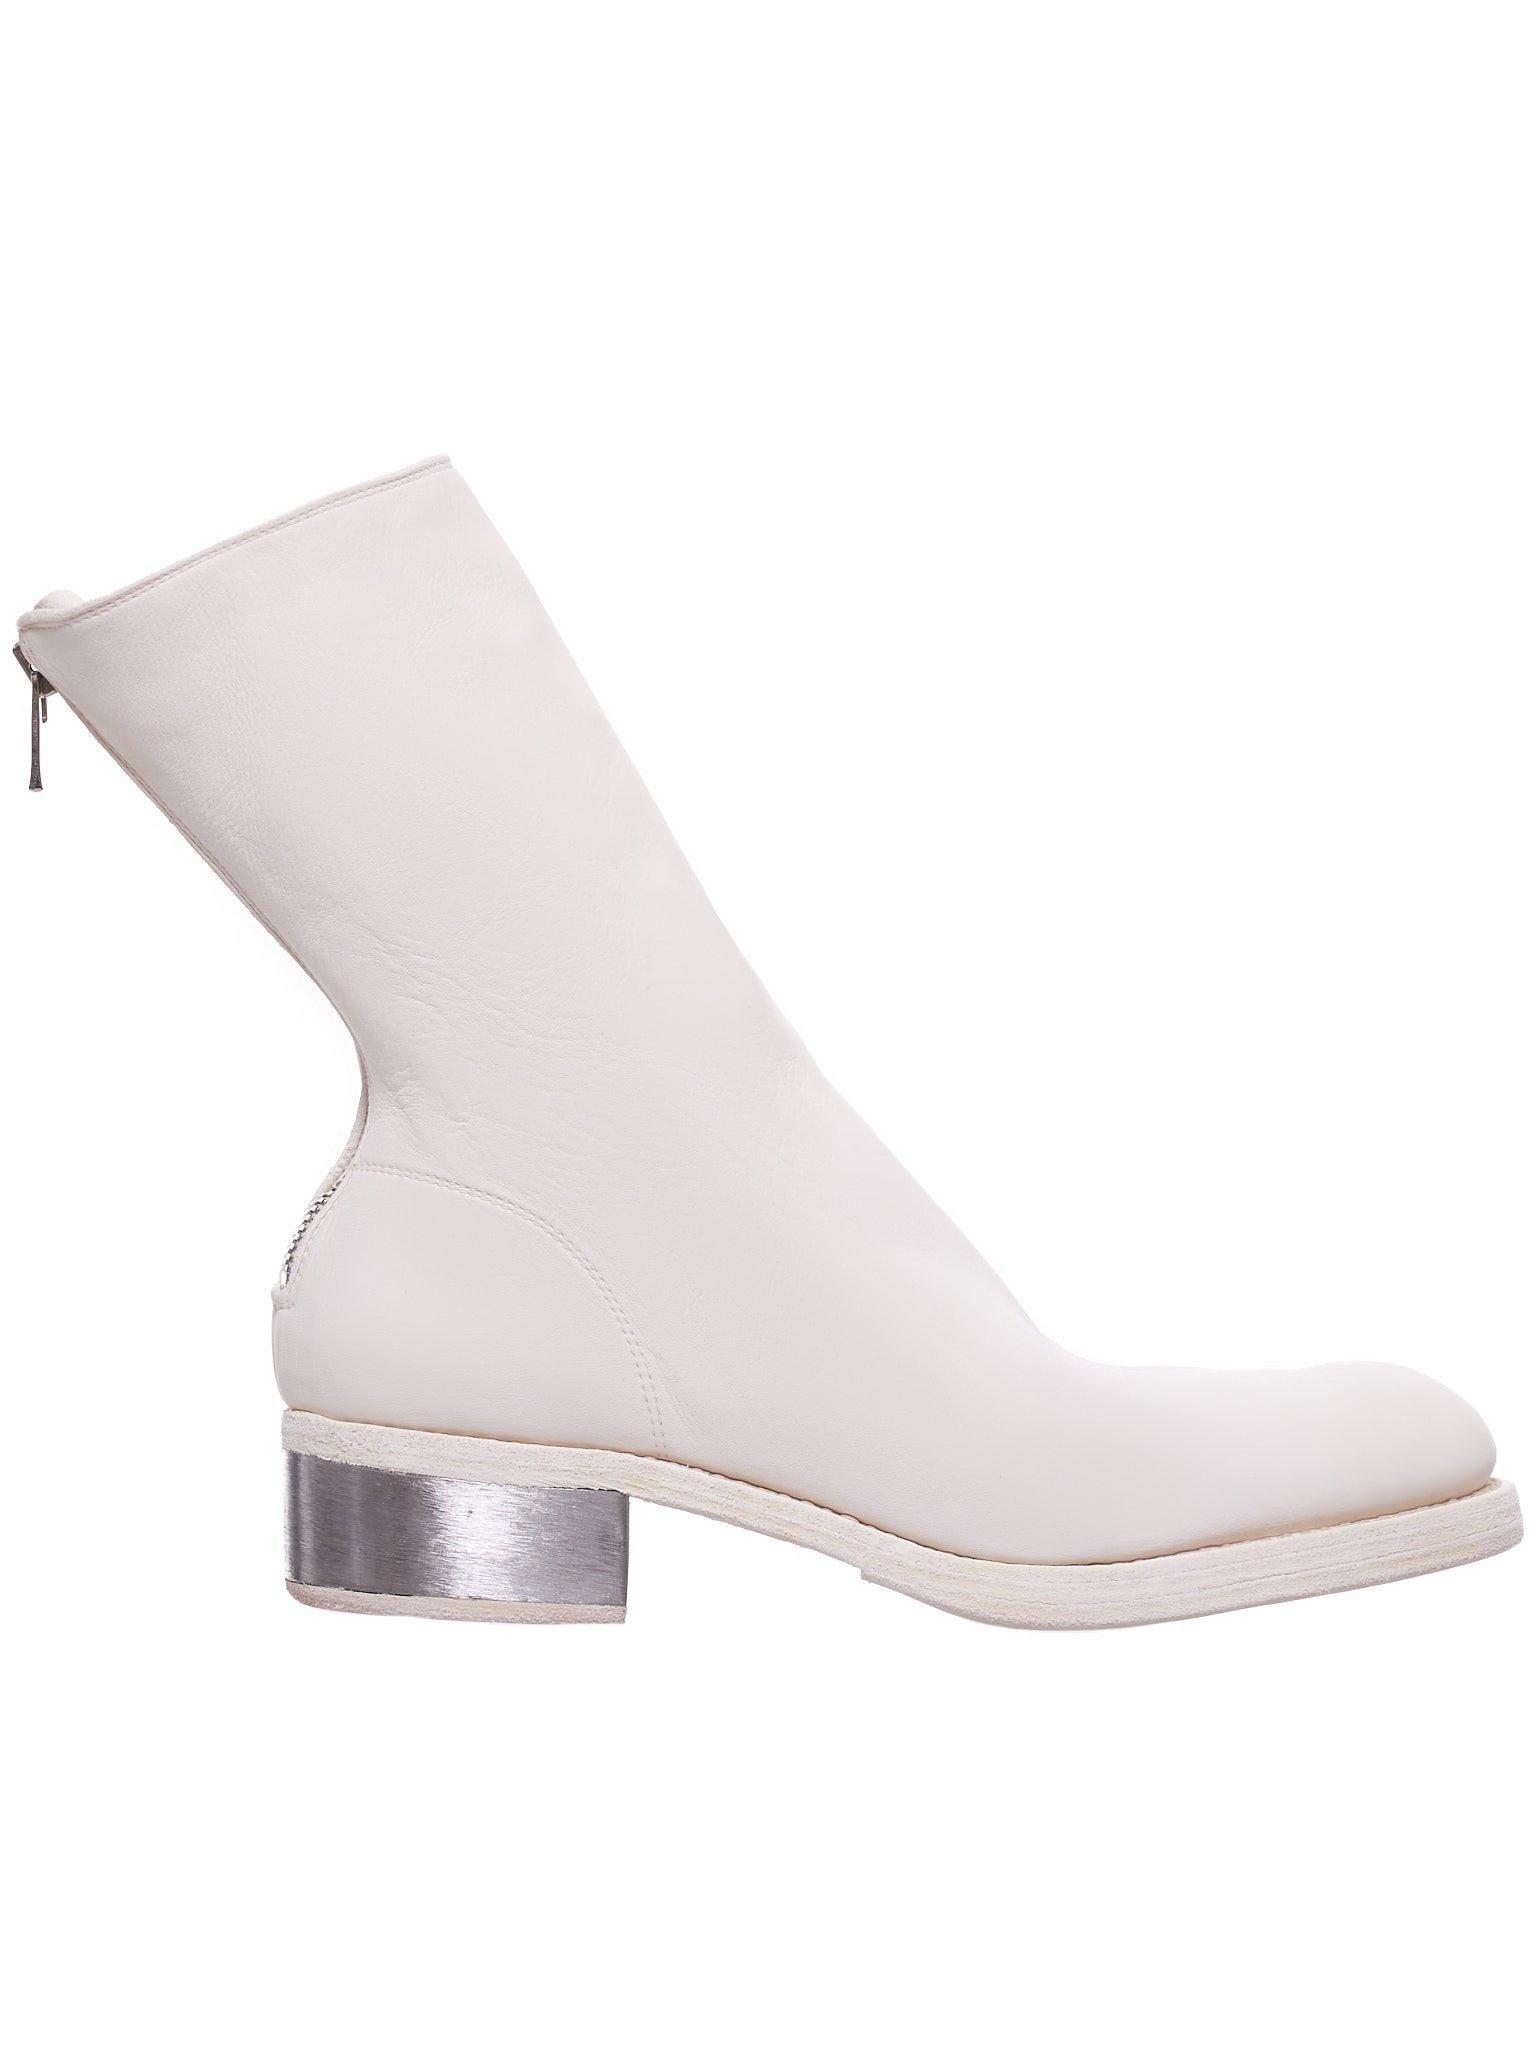 guidi boots white